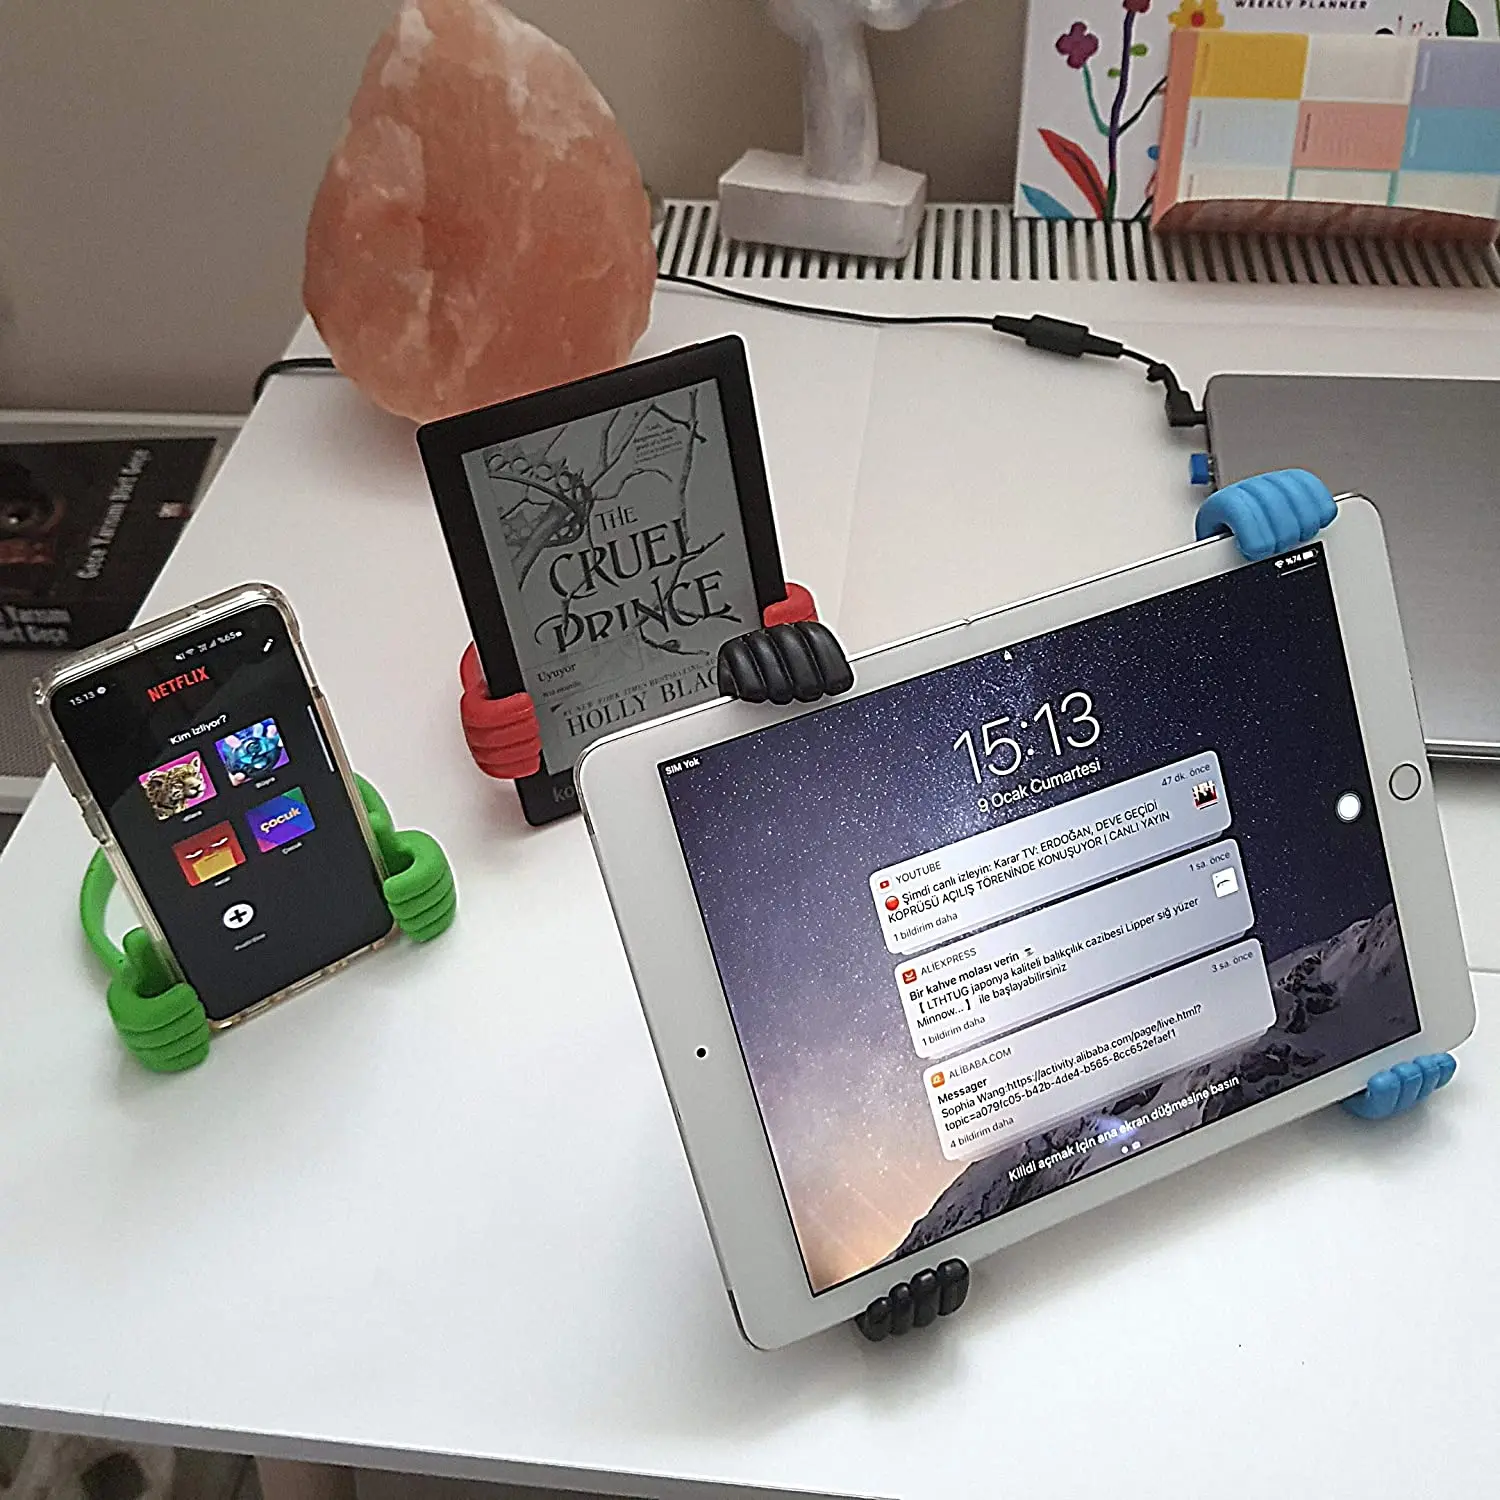 Soporte para teléfono móvil con pulgar hacia arriba, soporte ajustable para  tableta de silicona, soporte de escritorio portátil multicolor para iPhone